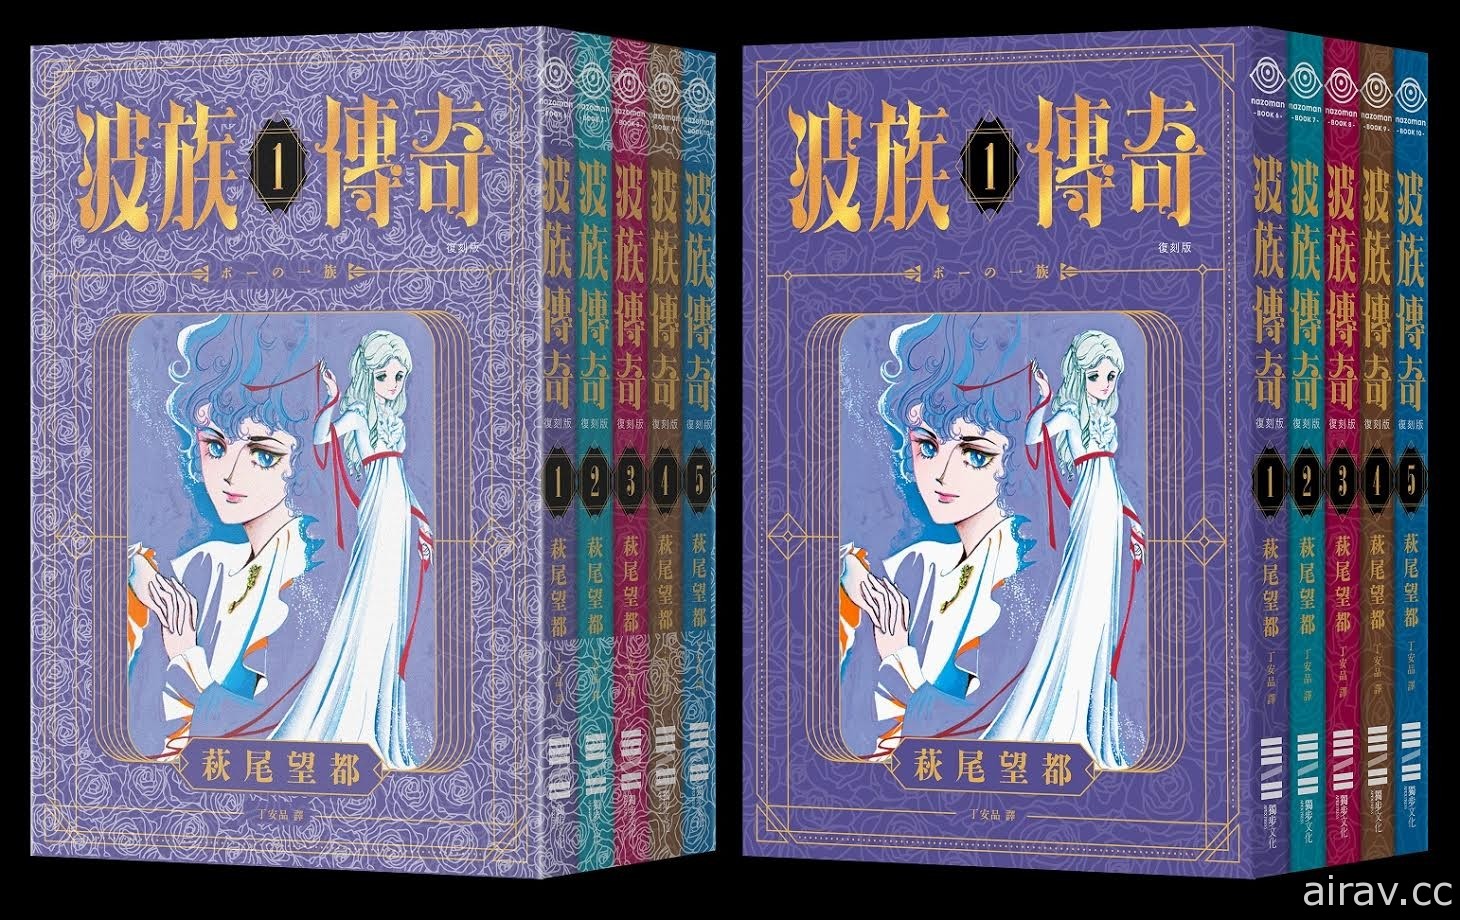 萩尾望都《波族传奇》漫画典藏套书 5 月 1 日在台推出